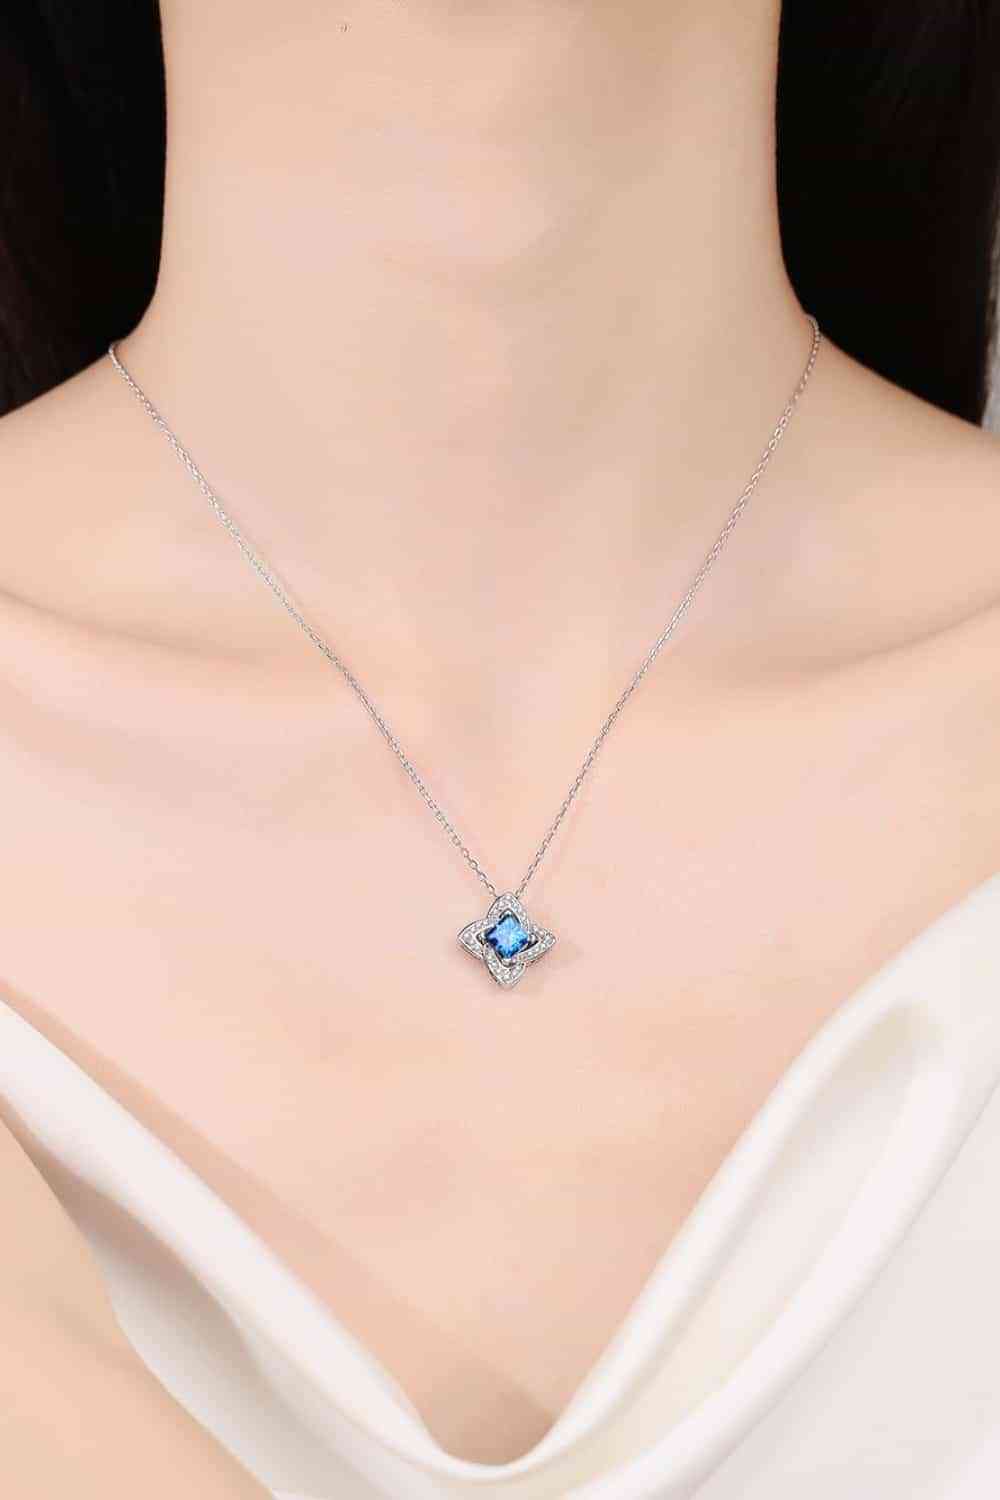 Blue Gem 1 Carat Moissanite Floral Pendant Necklace